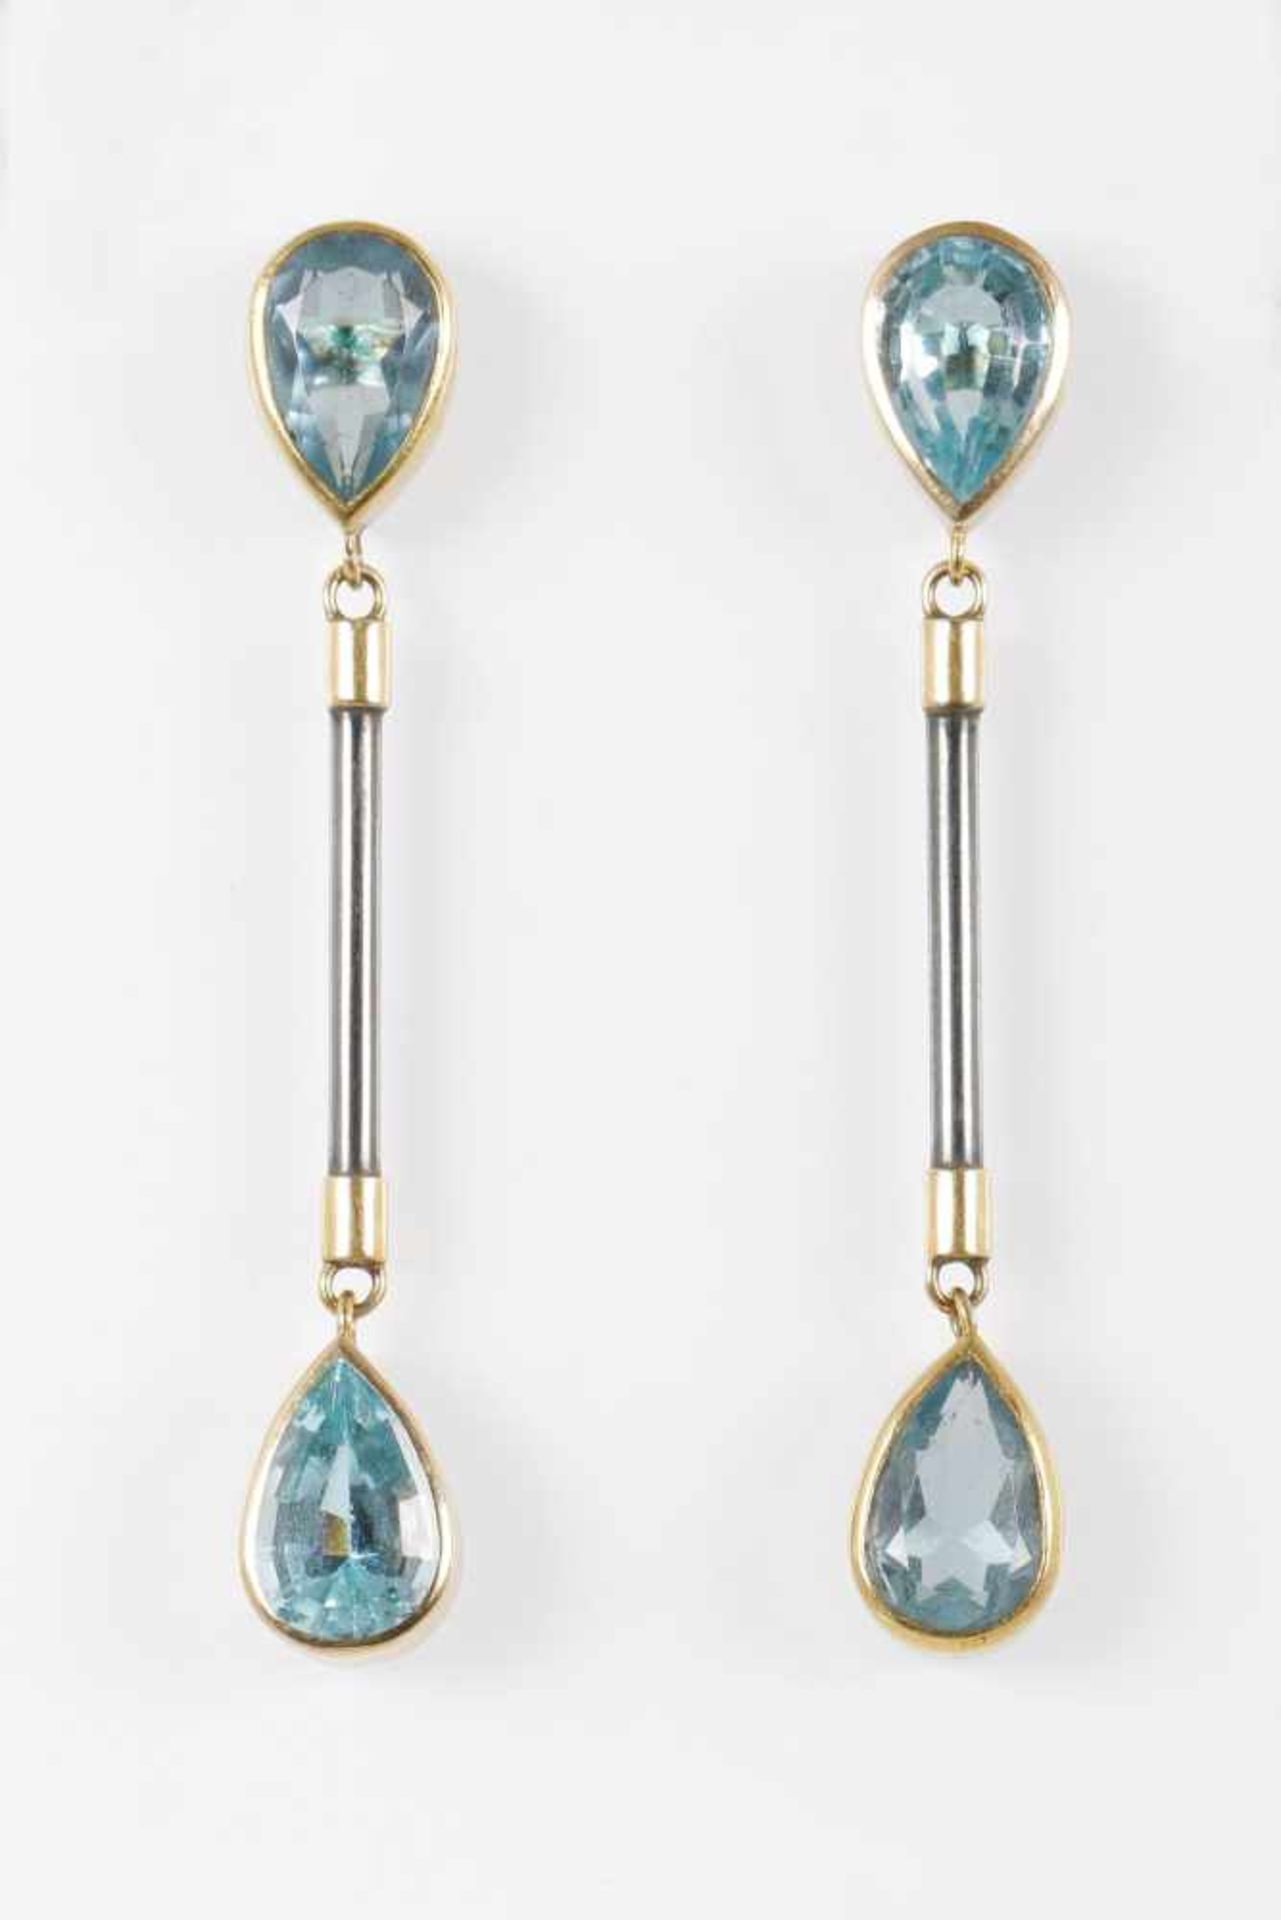 Paar Ohrhänger mit Topas750er Gelbgold (nicht punziert) und Silber, je 2 tropfenförmige Steine (je